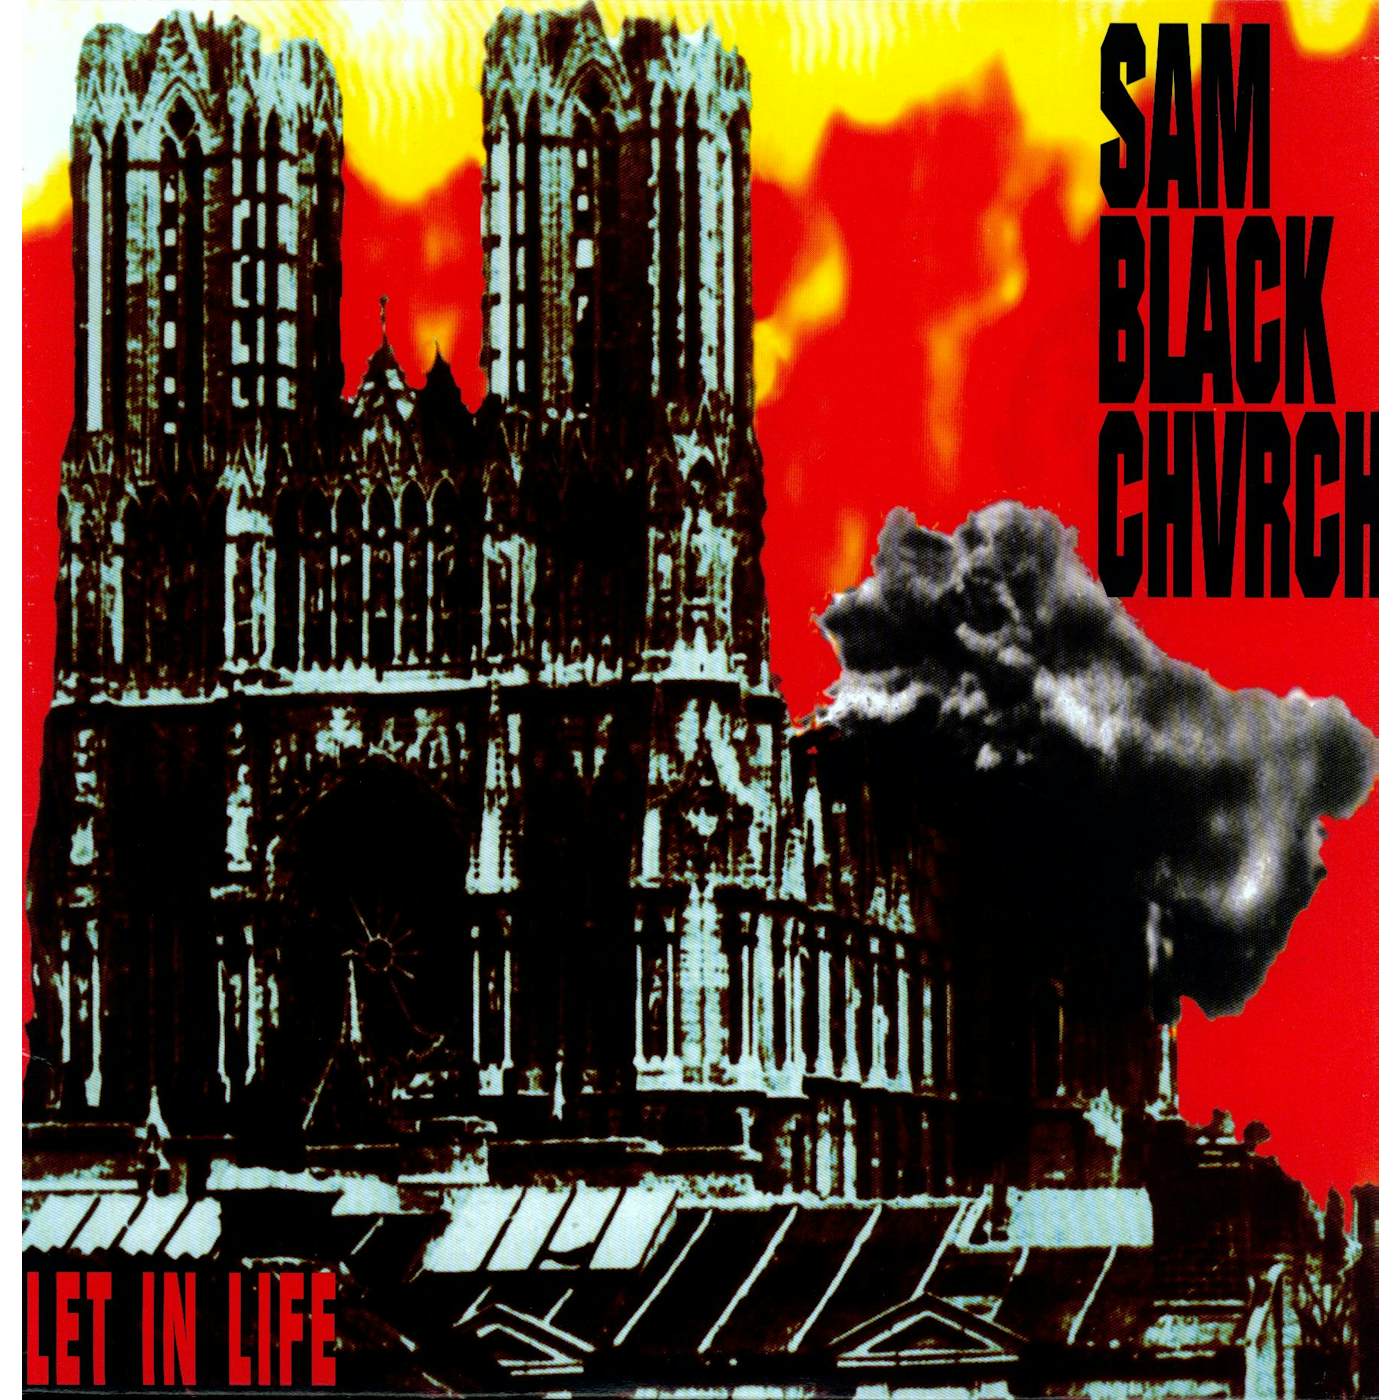 Sam Black Church Let In Life Vinyl Record